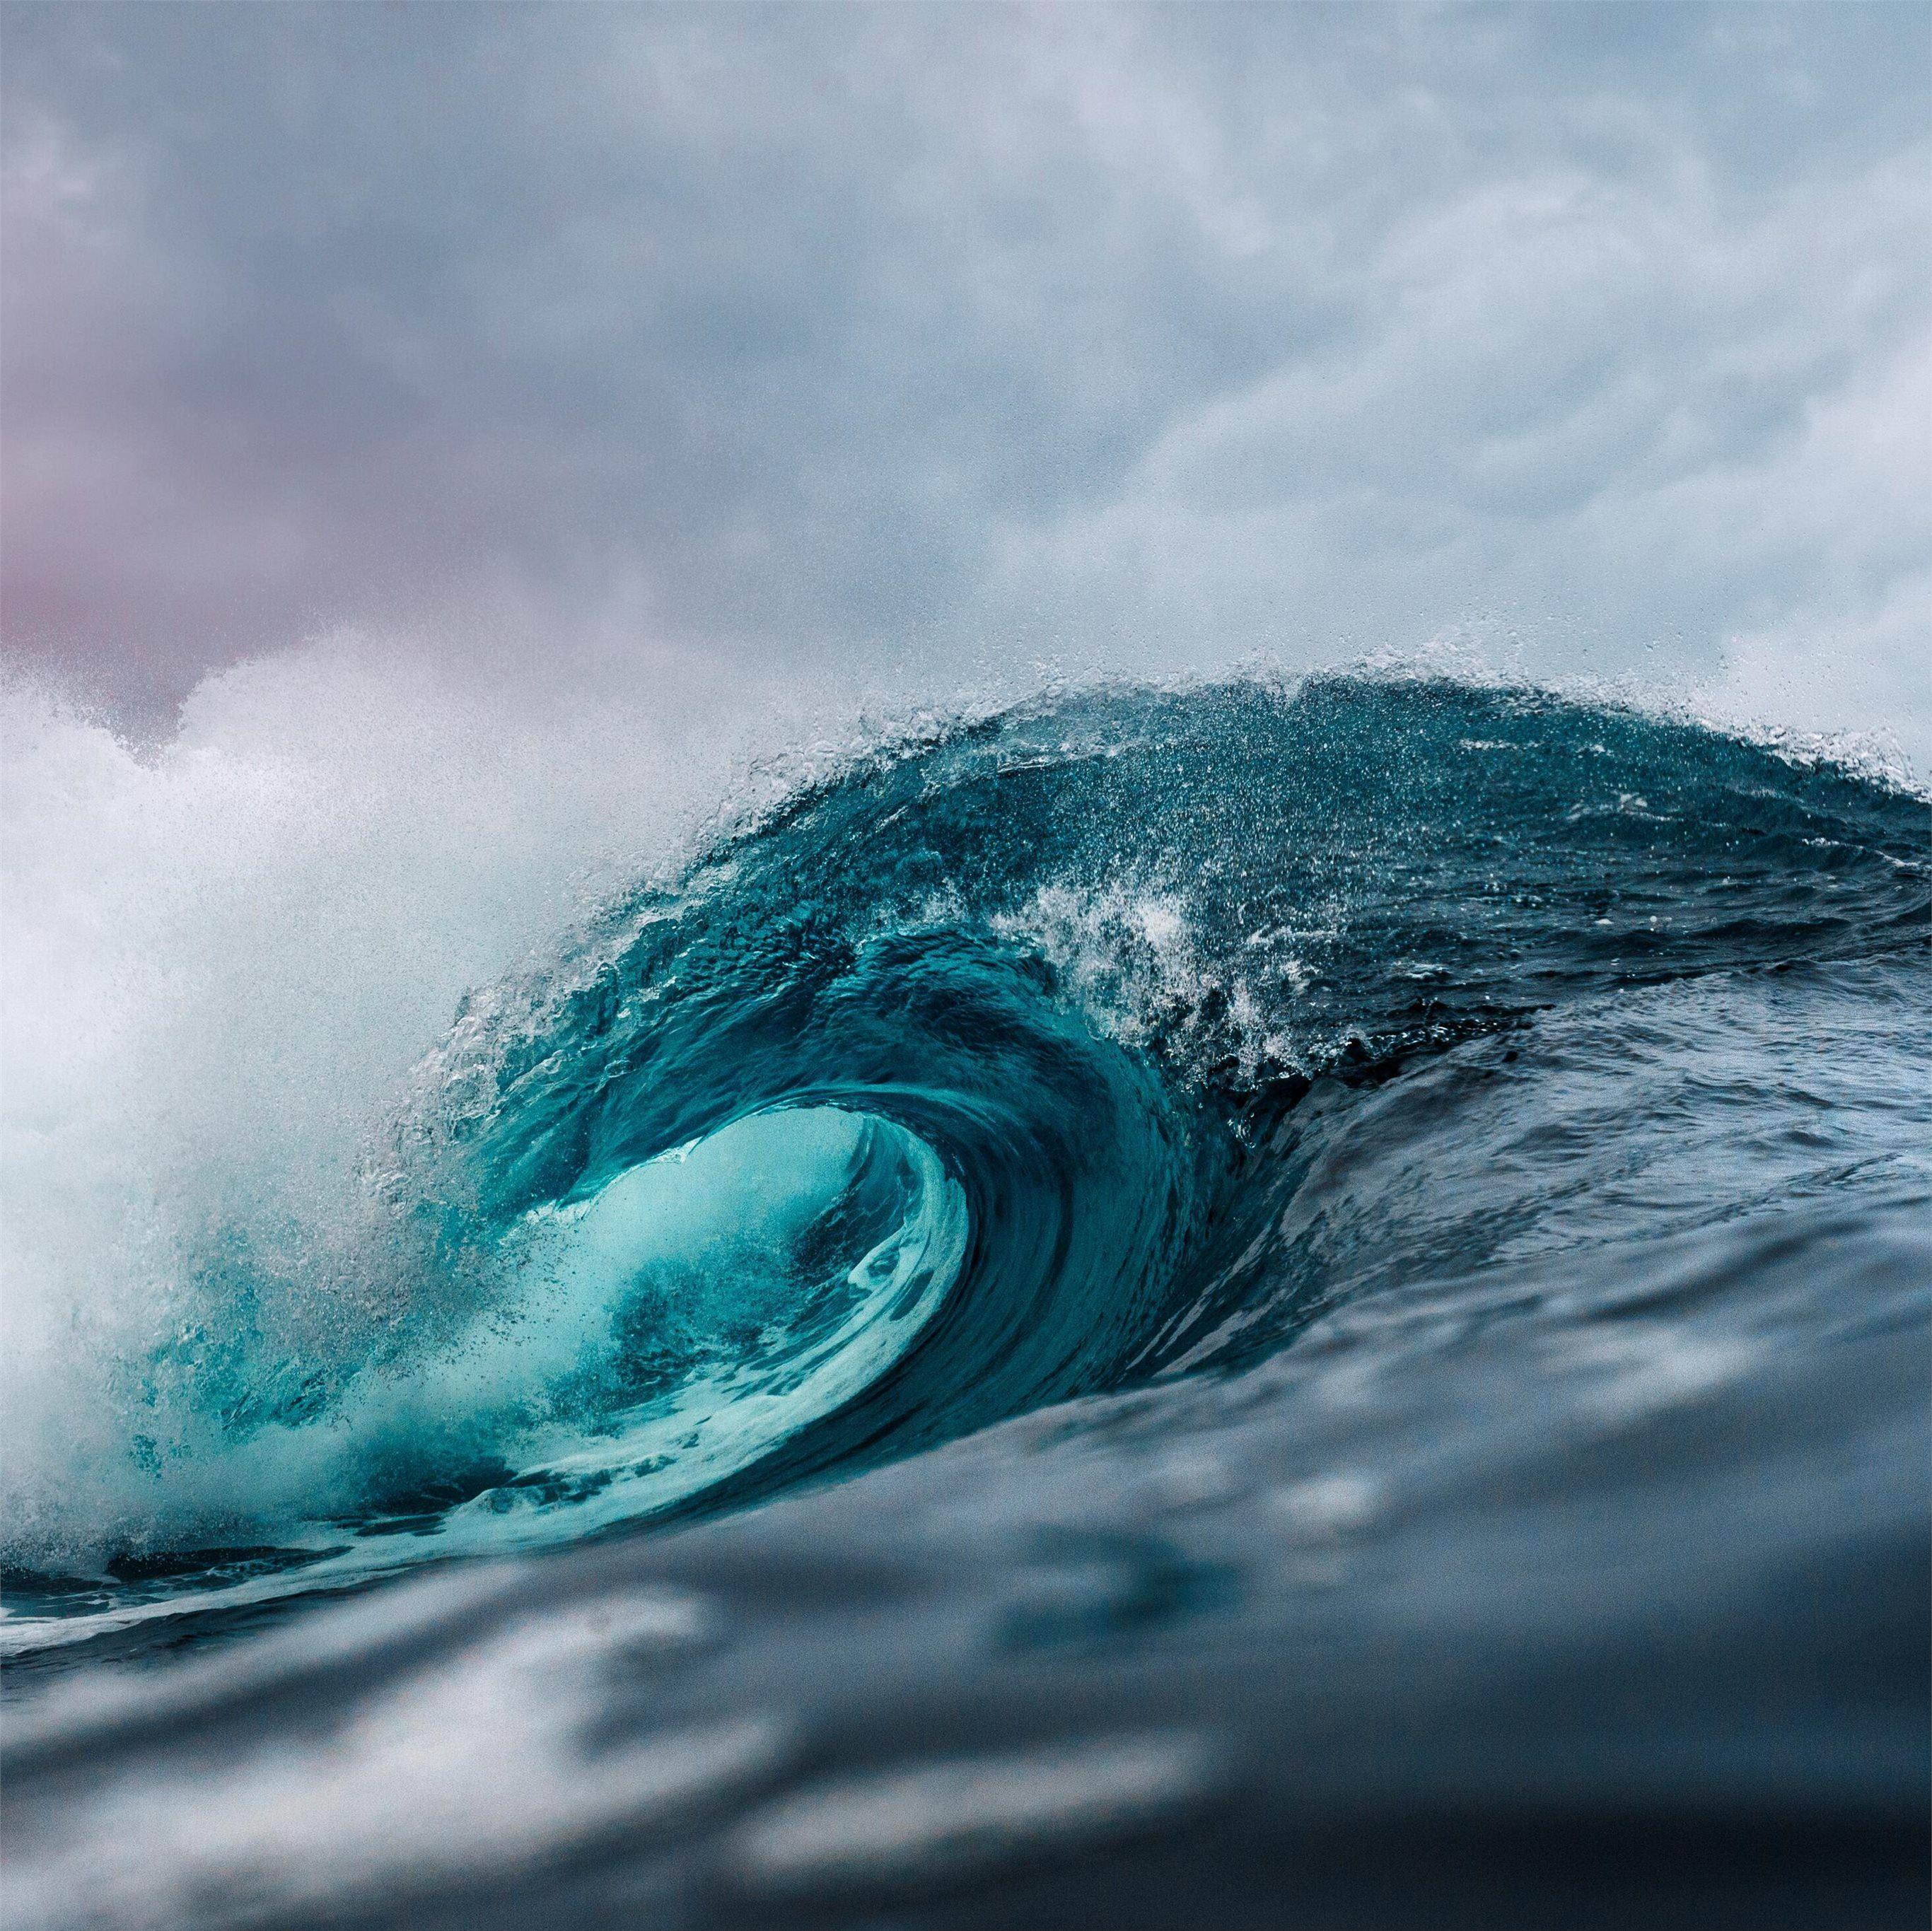 ocean wave 5k iPad Pro Wallpapers Free Download